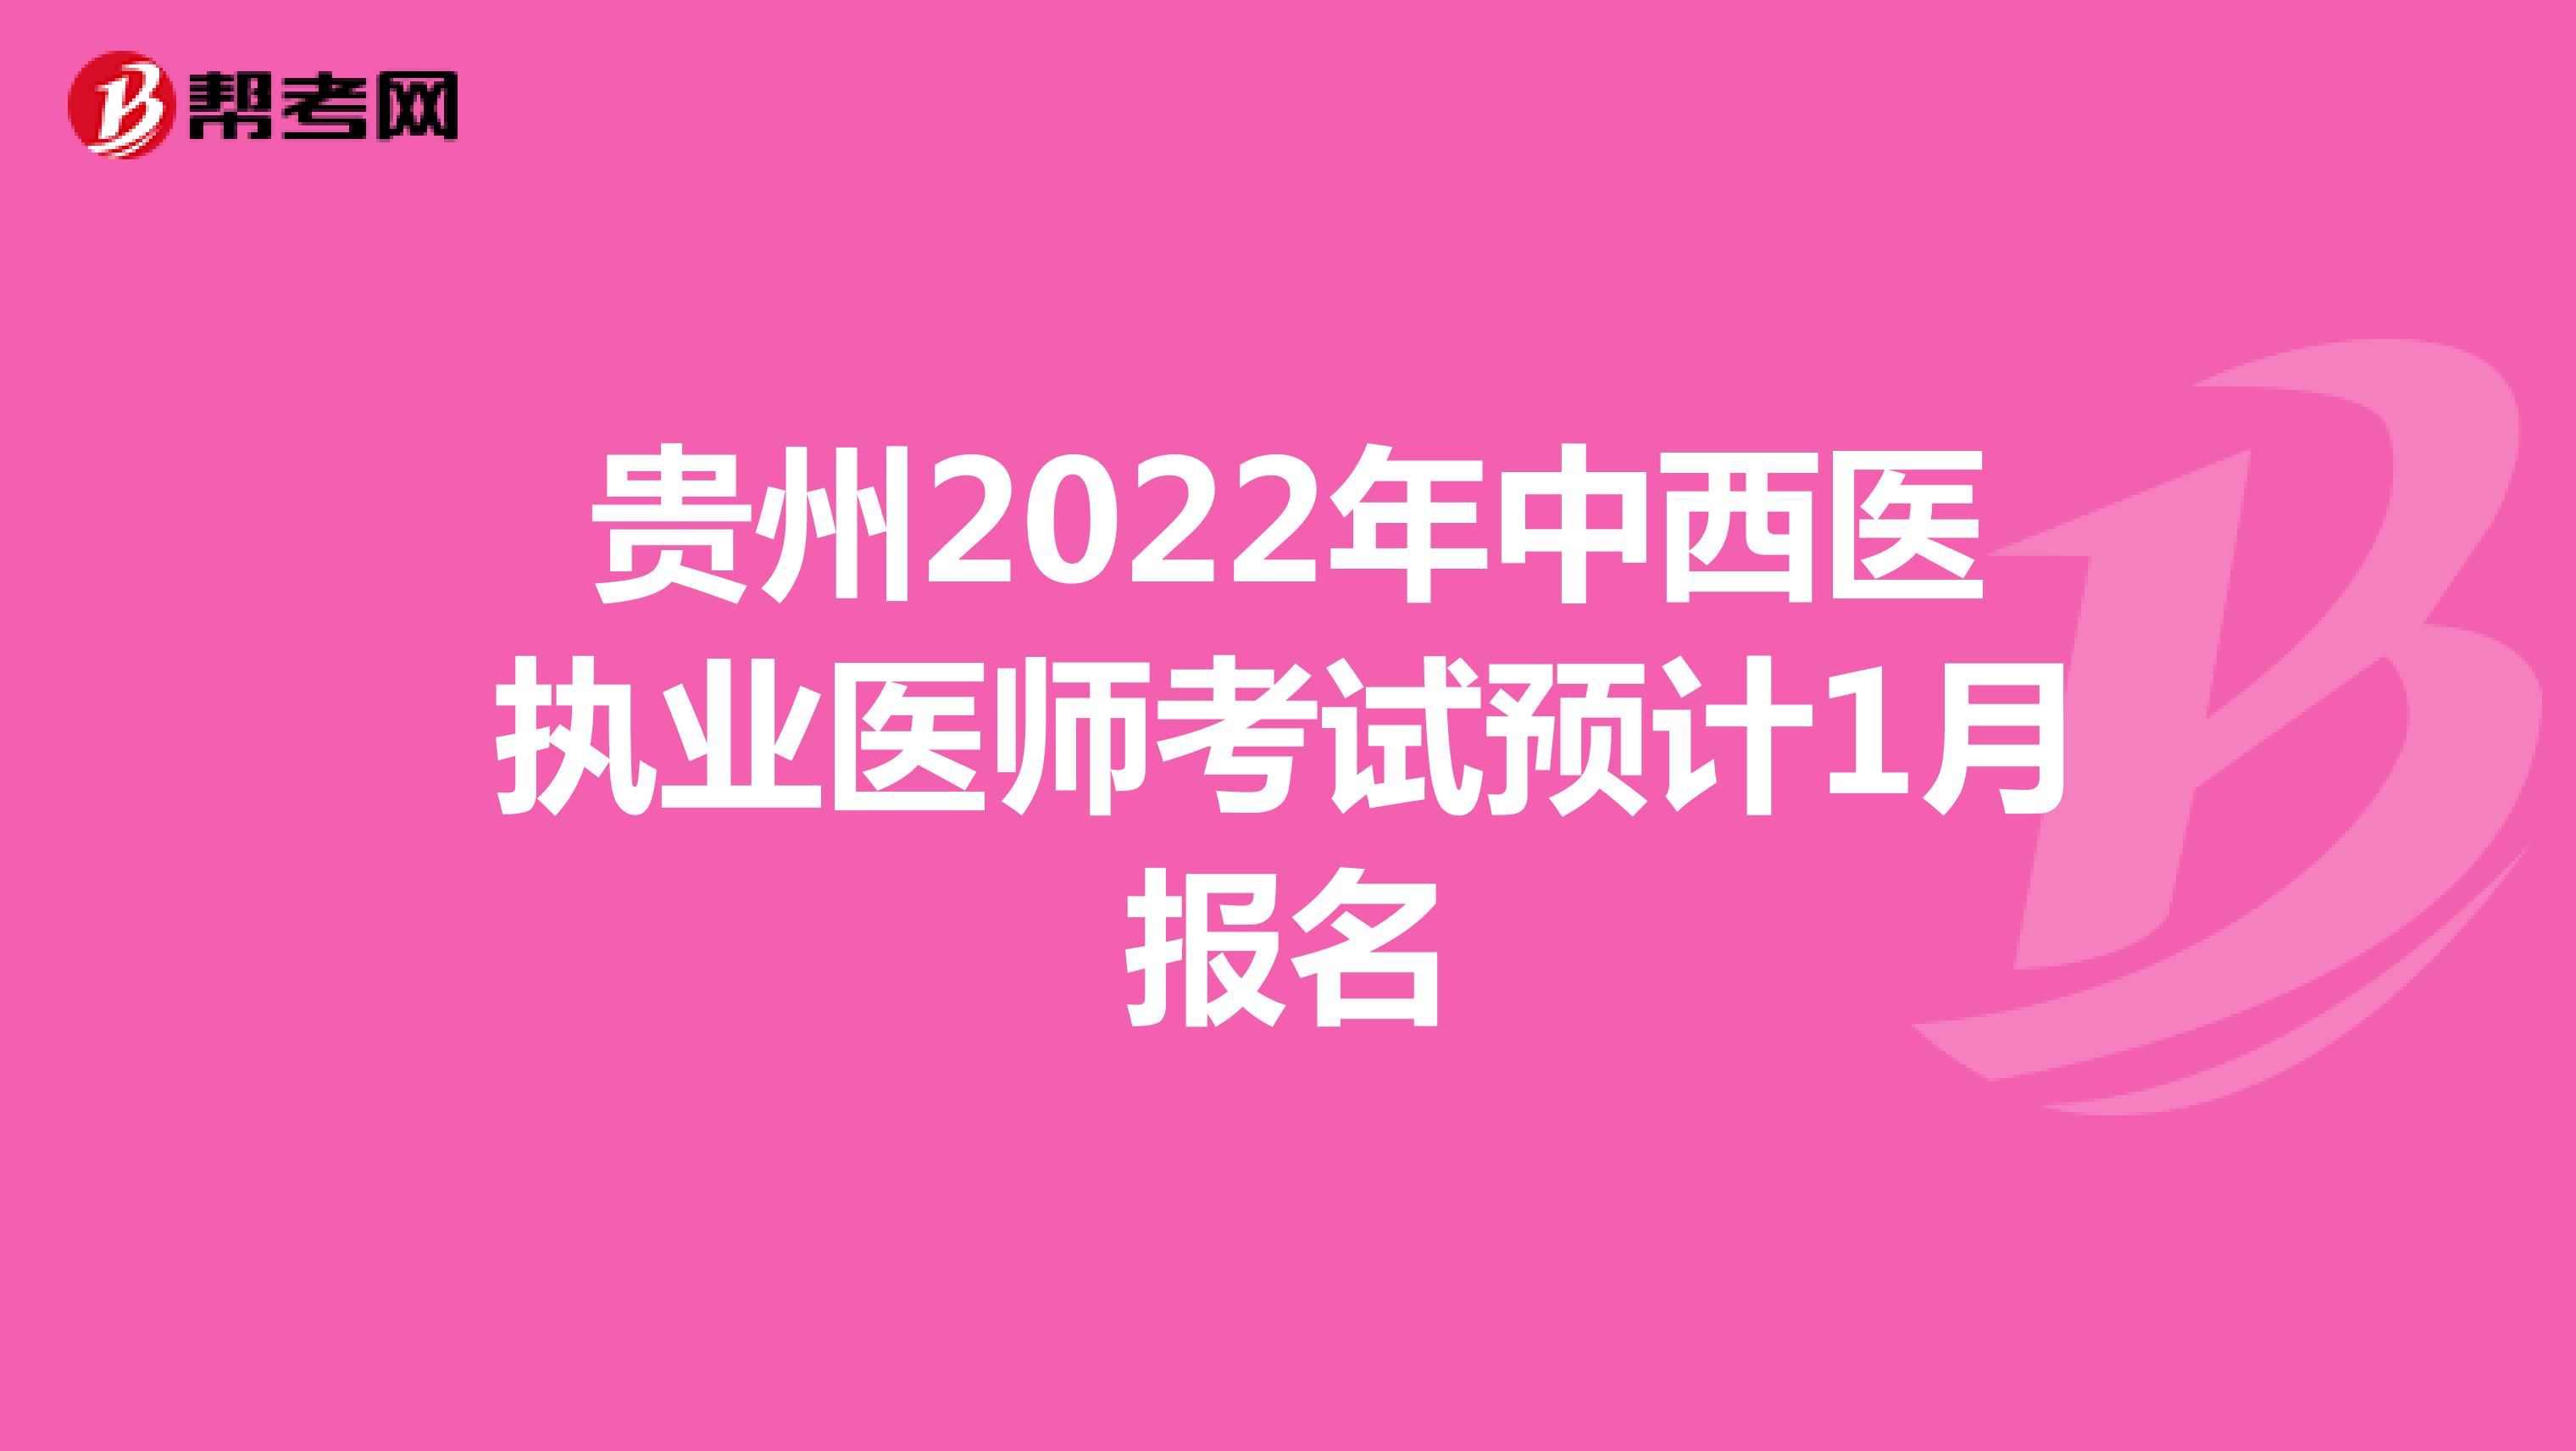 贵州2022年中西医执业医师考试预计1月报名